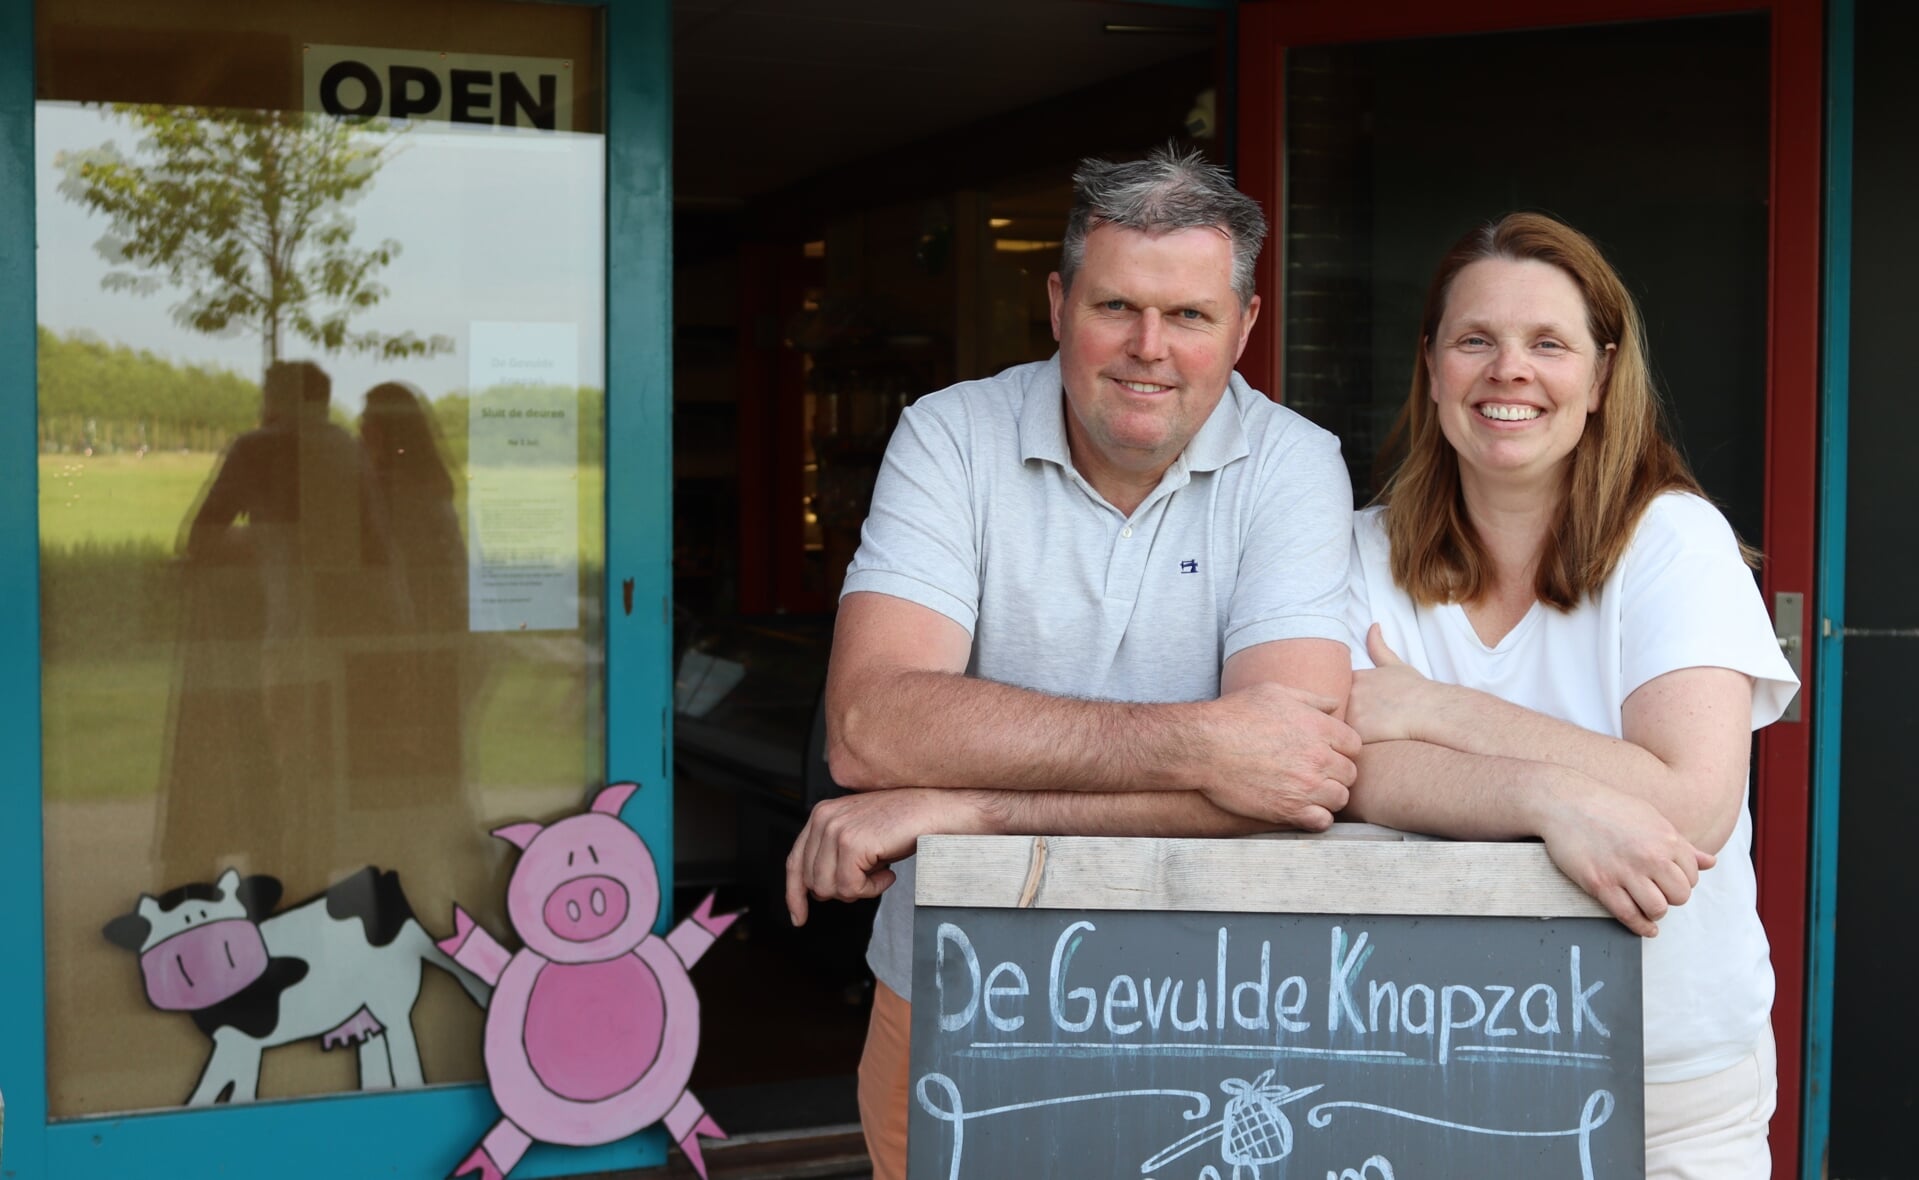 Erica en Pieter van der Meijden nemen op 1 juli afscheid van De Gevulde Knapzak. Hun boerderijwinkel aan de Kapelweg in Boxtel sluit na bijna zeventien jaar de deuren 